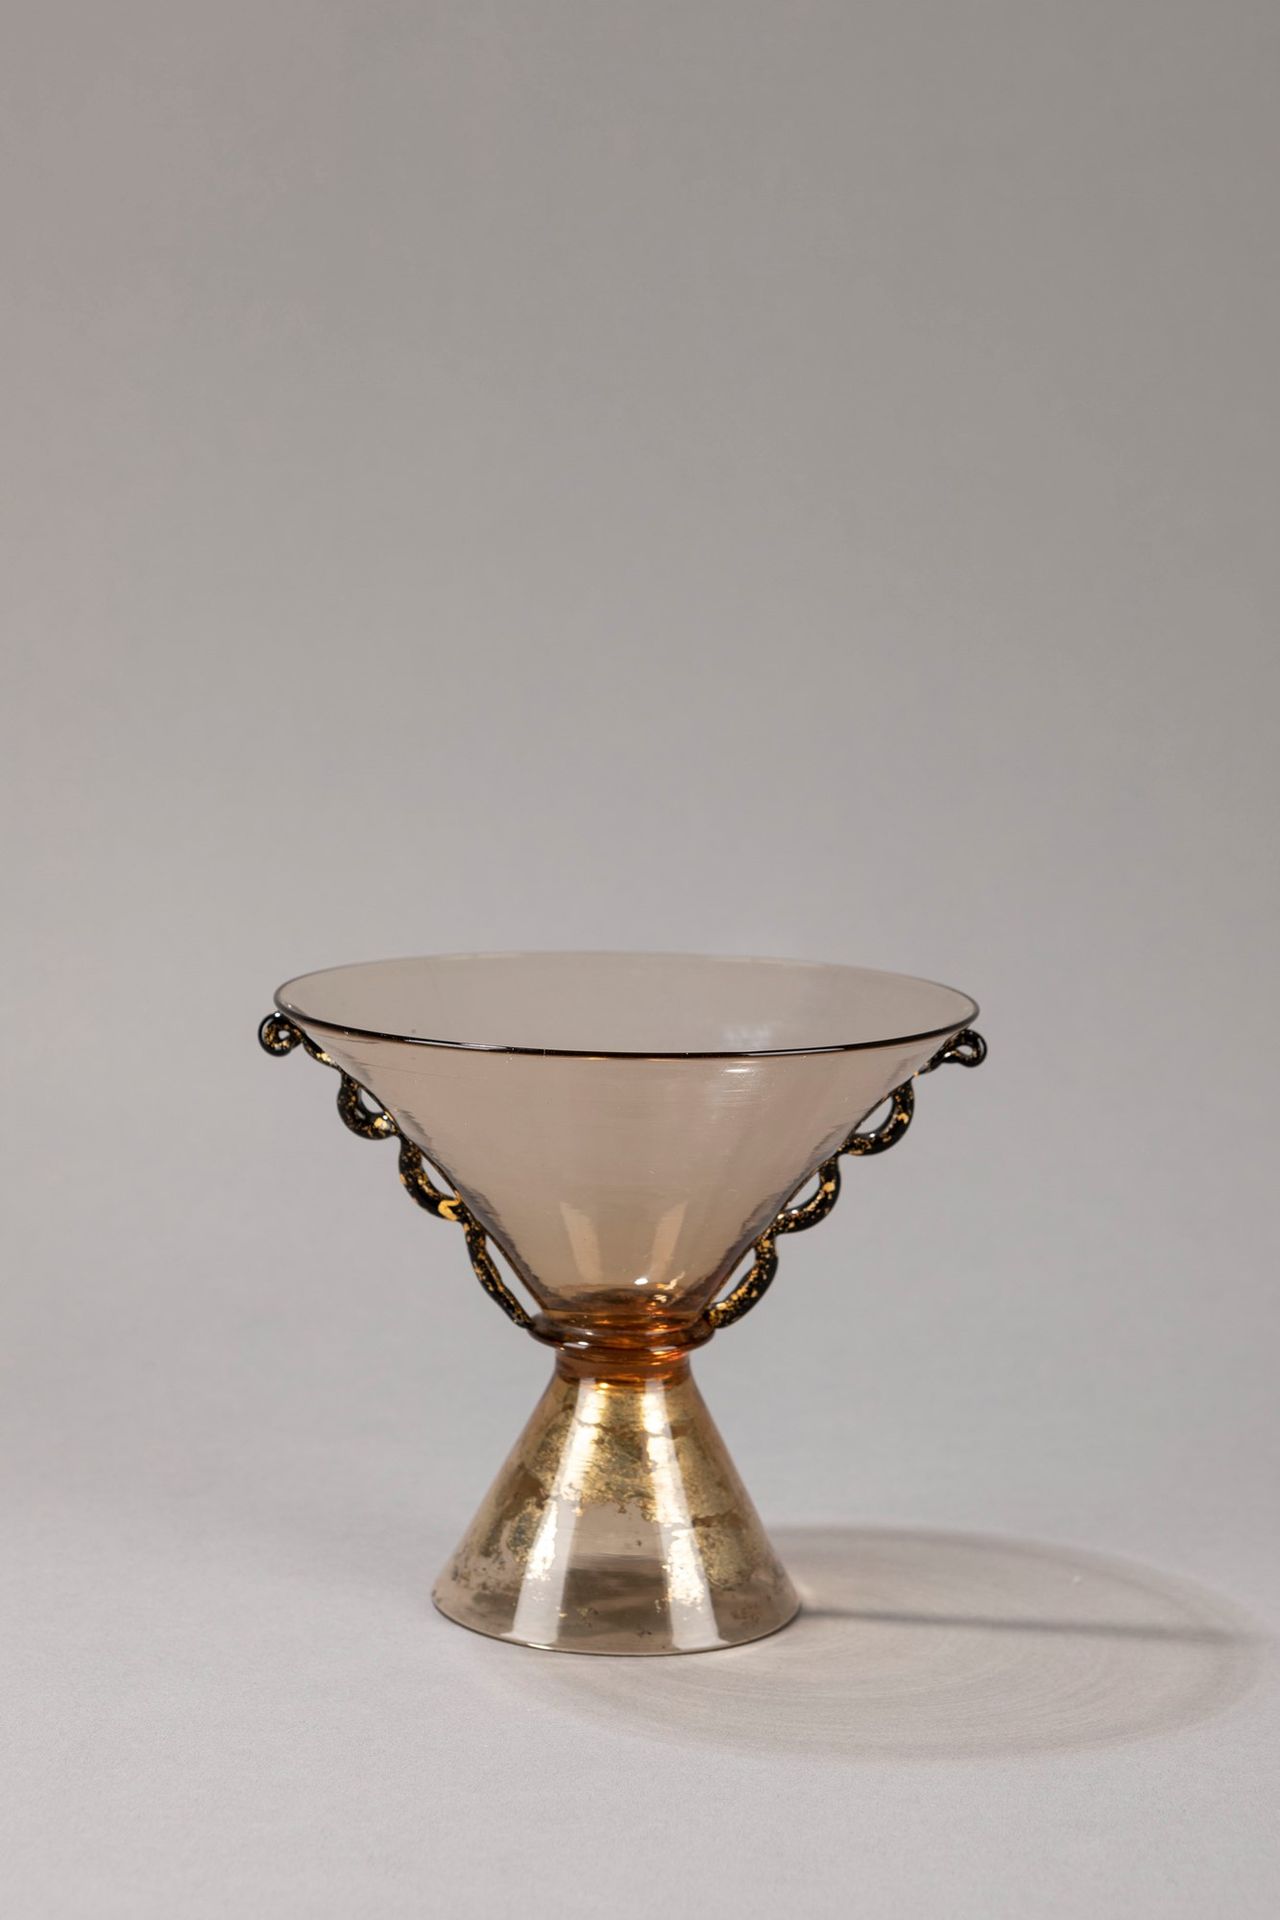 SALIR, Murano Vase, 1930 ca.

H 13 x diam 14 cm
blown glass, mirrored base